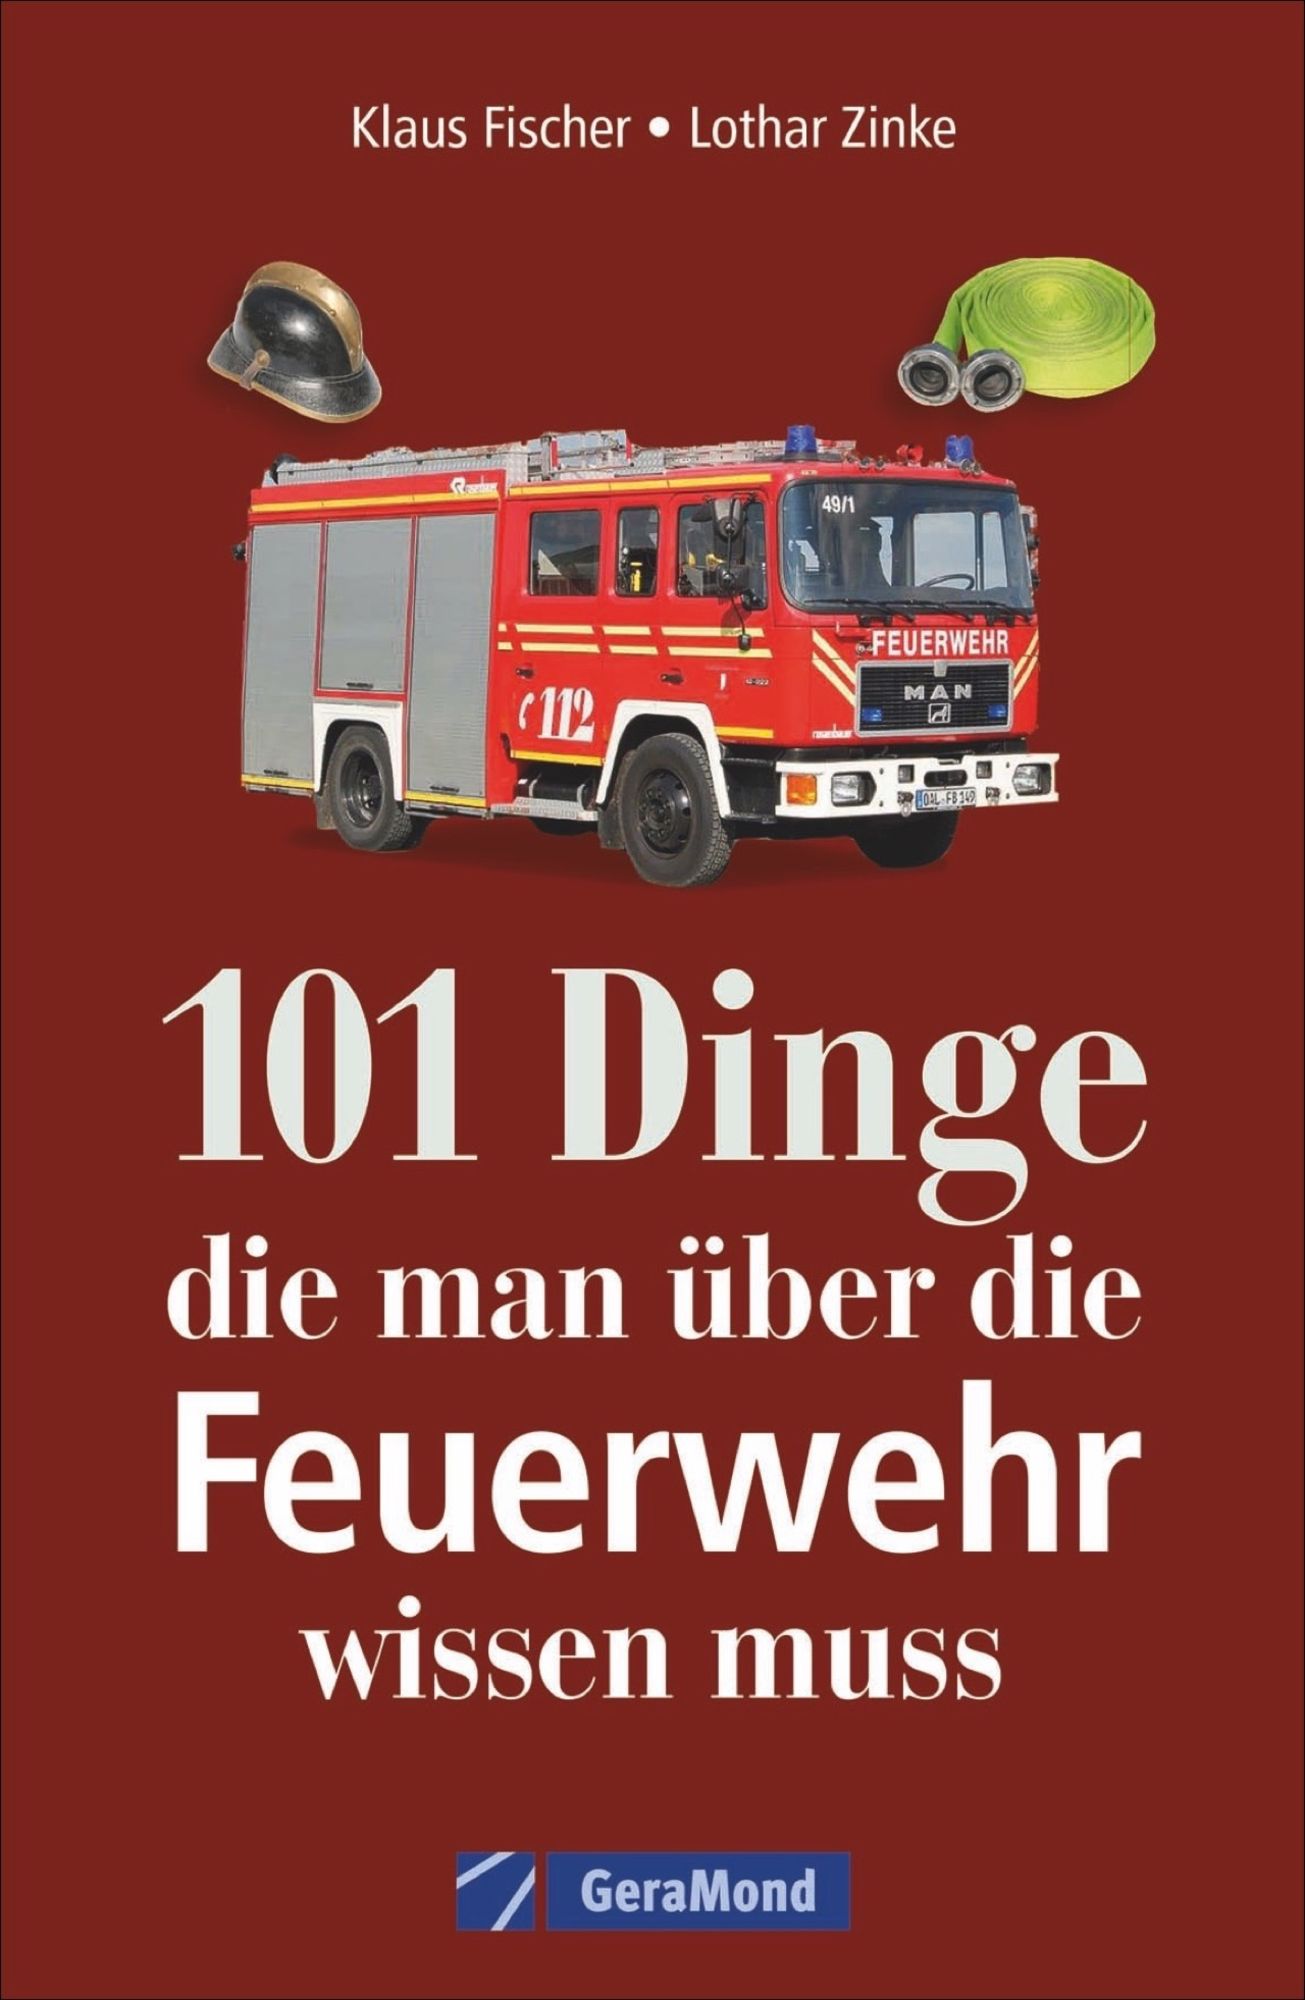 101 Dinge, die man über die Feuerwehr wissen muss' von 'Klaus Fischer' -  Buch - '978-3-95613-069-4